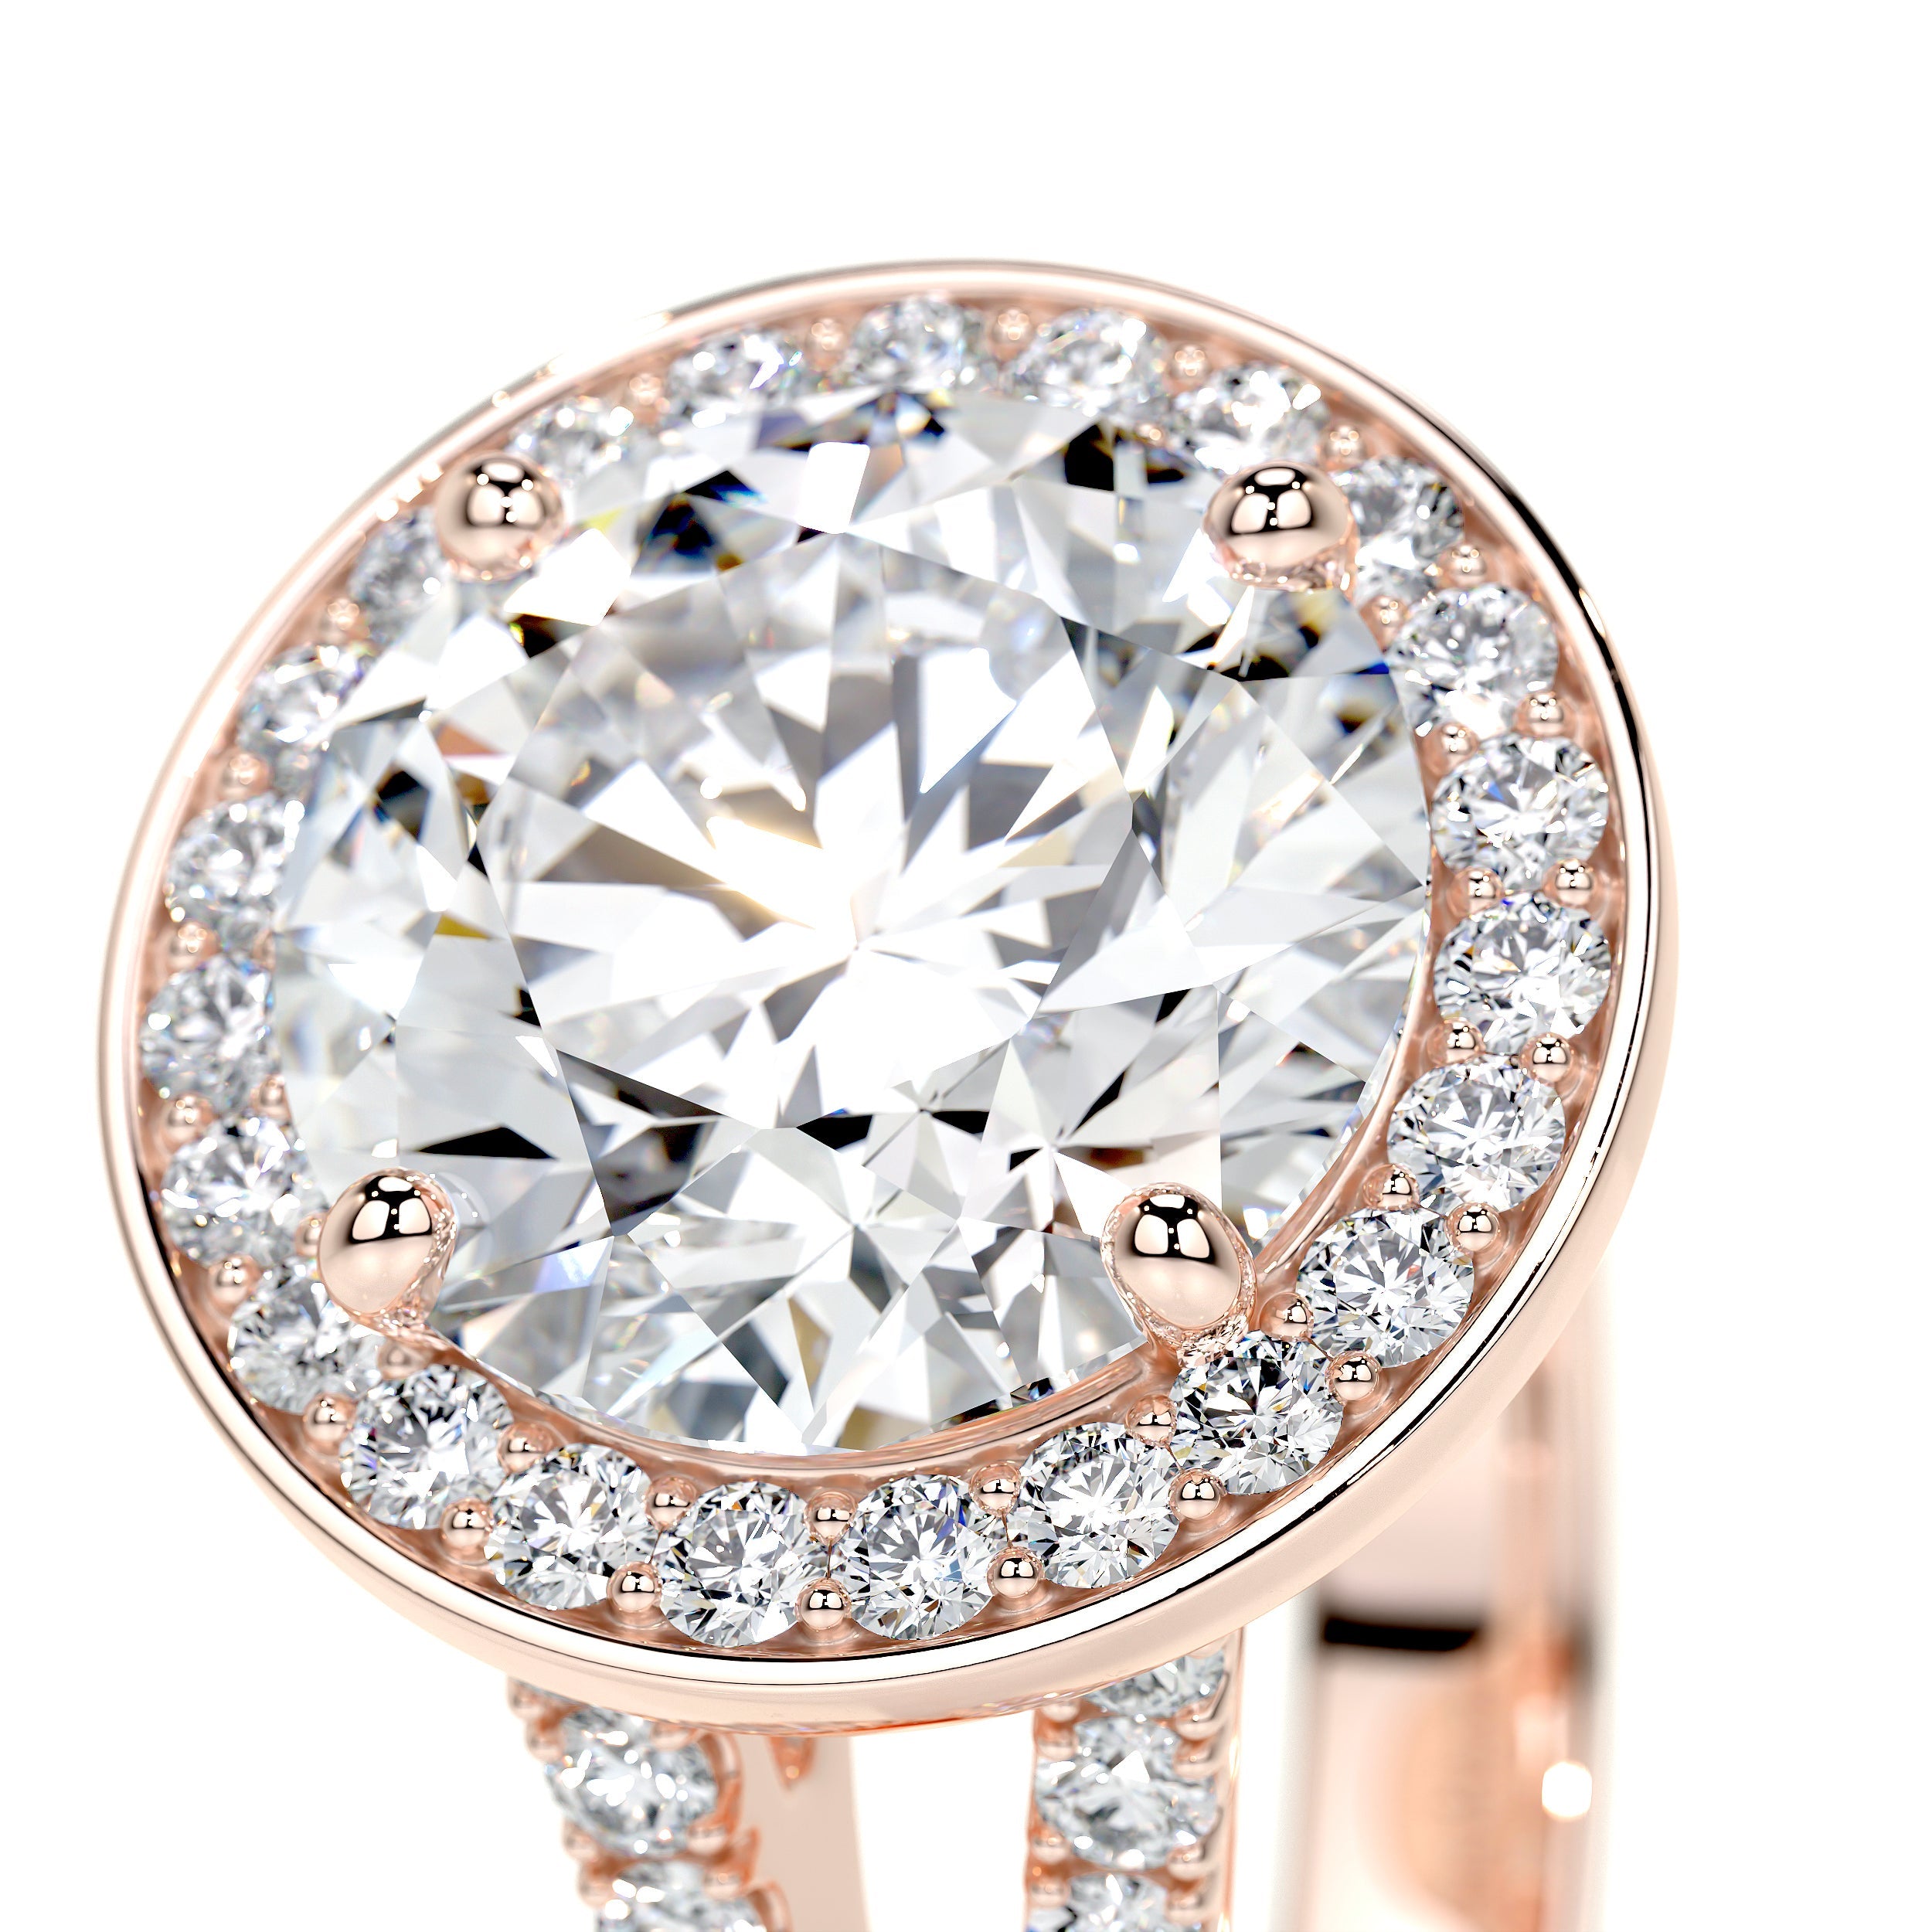 Camilla Lab Grown Diamond Ring   (2.75 Carat) -14K Rose Gold